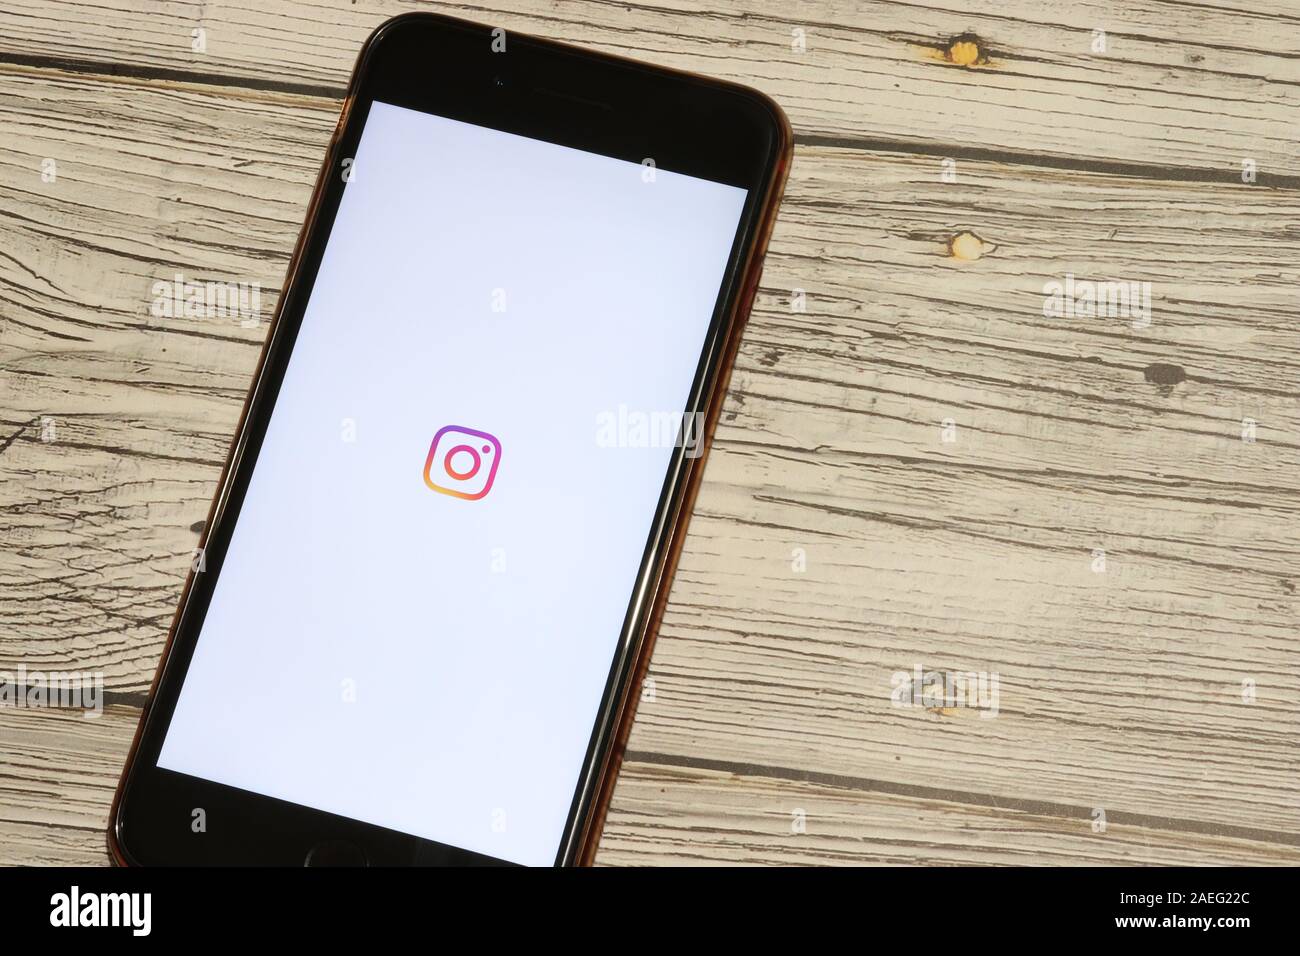 Los Angeles, Californie, USA - 4 décembre 2019 : icône d'Instagram sur l'écran du téléphone Vue de dessus sur fond blanc, de rédaction d'illustration. Banque D'Images